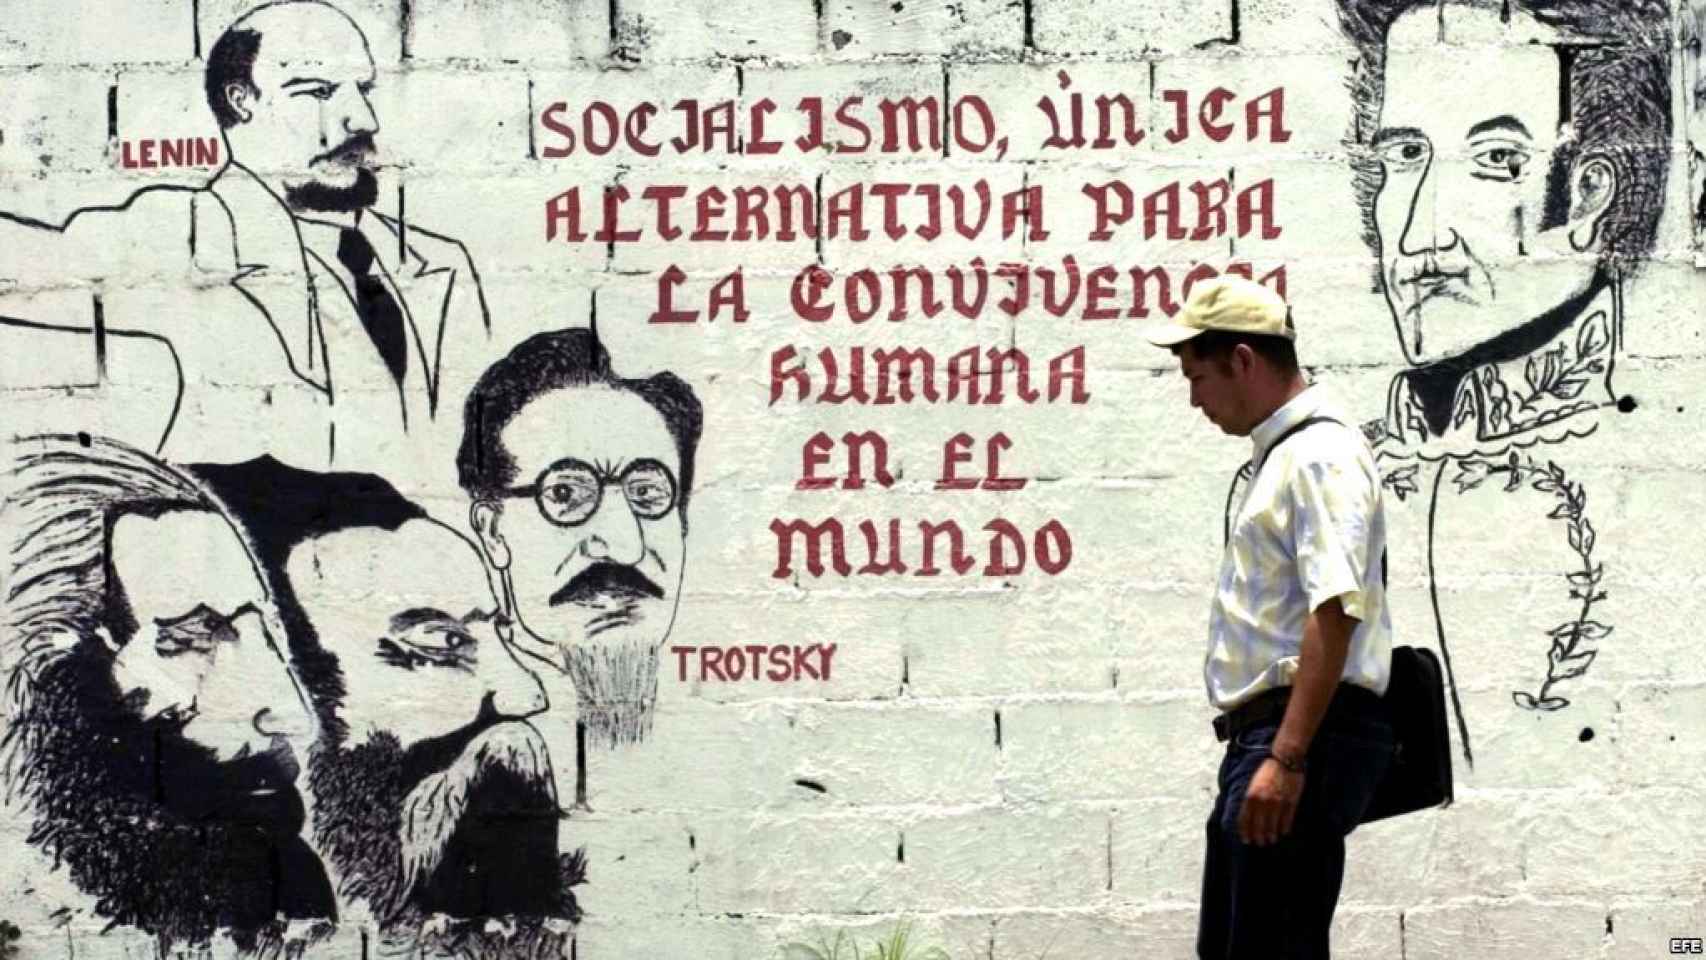 Un cartel en Cuba apelando al socialismo.